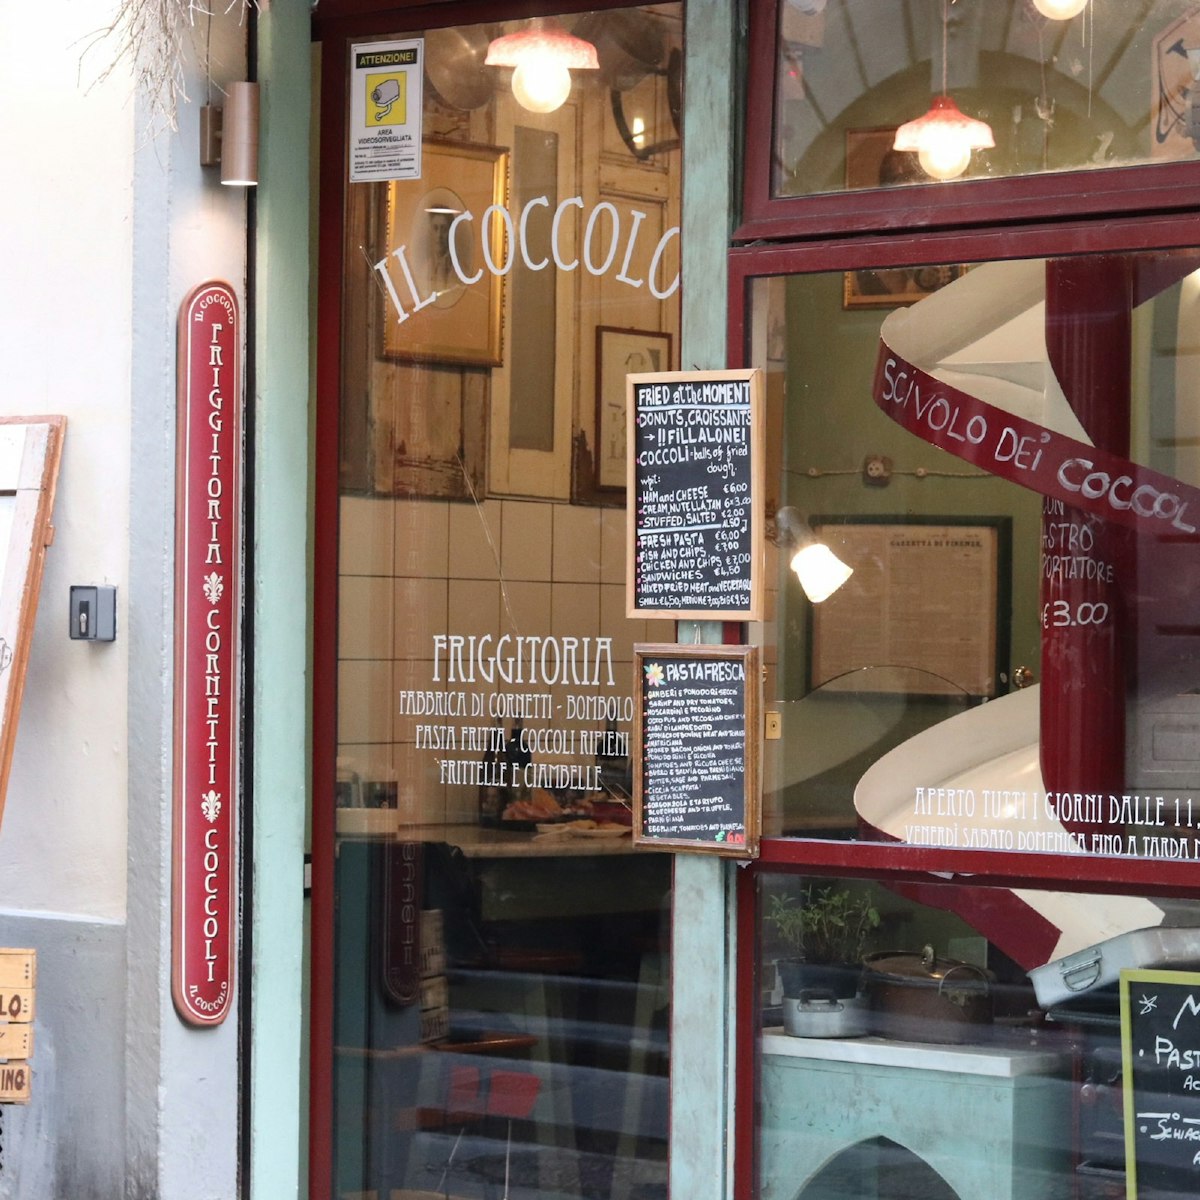 Shop front , Il Coccolo restaurant.